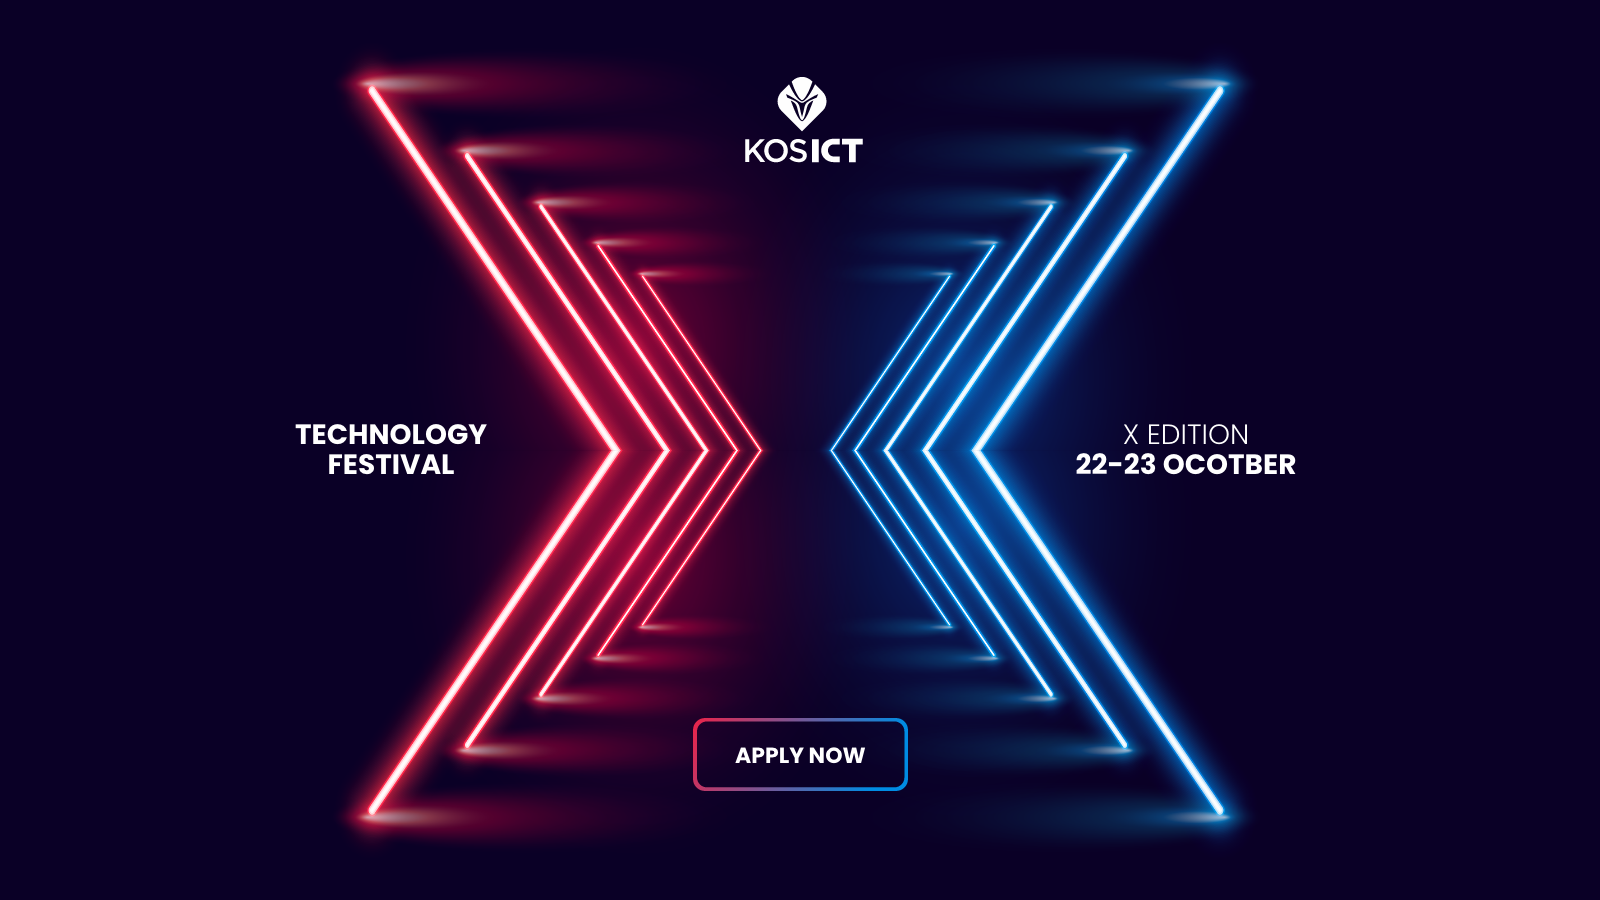  Sot mbahet edicioni i 10-të të festivalit të teknologjisë “KosICT”